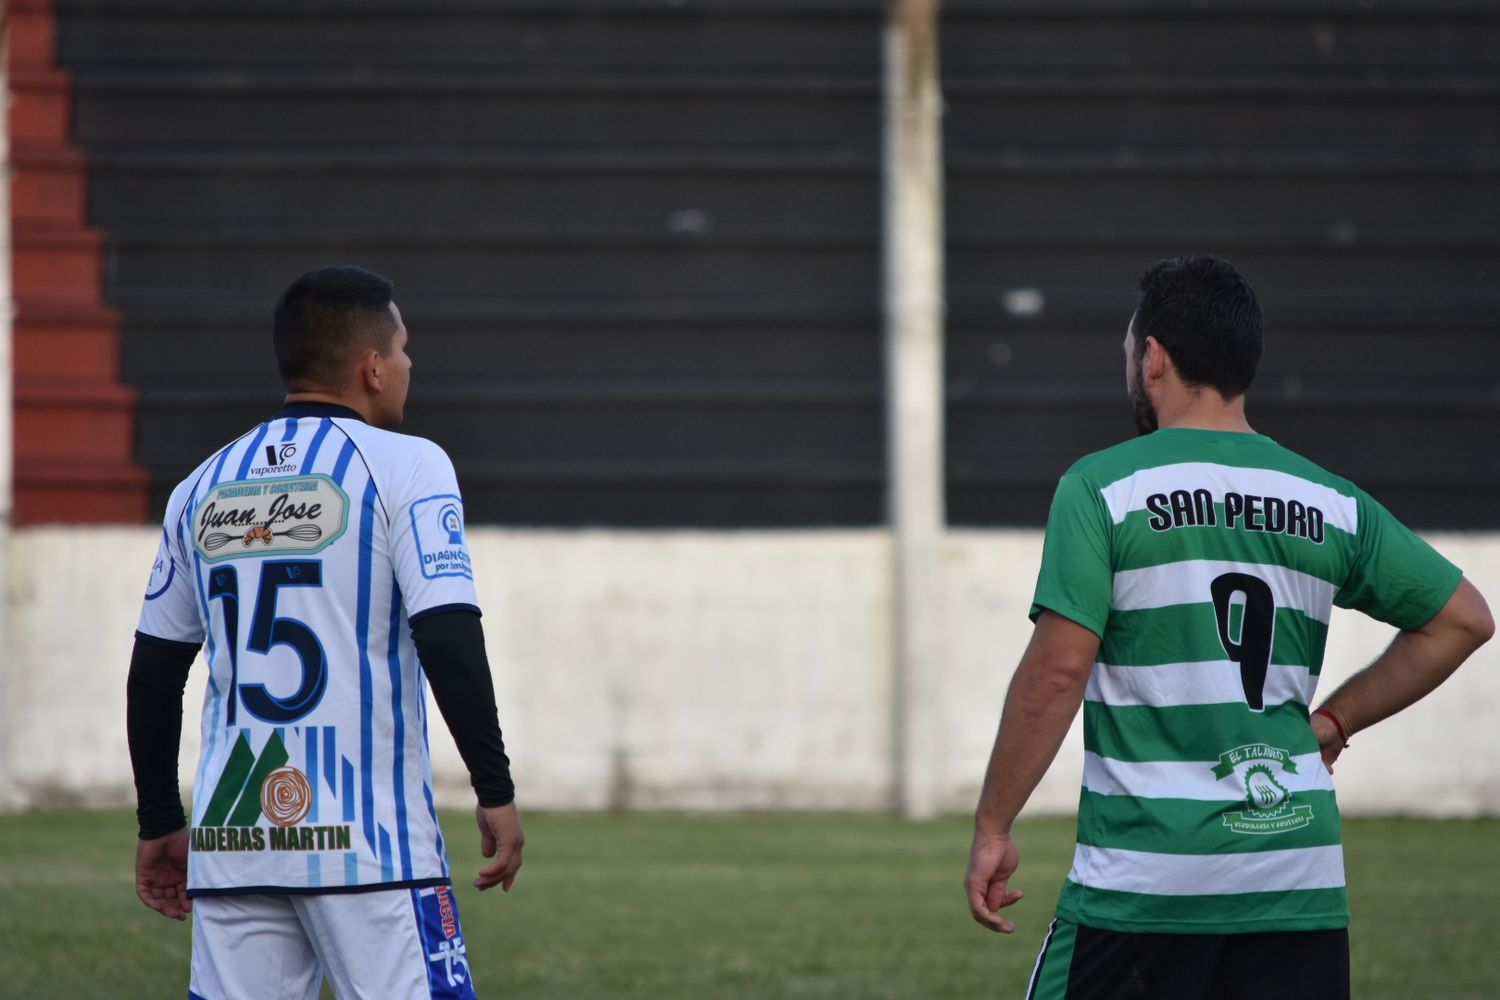 La Liga de Fútbol de Baradero quiere renovar la Alianza con la de San Pedro, pero con cambios